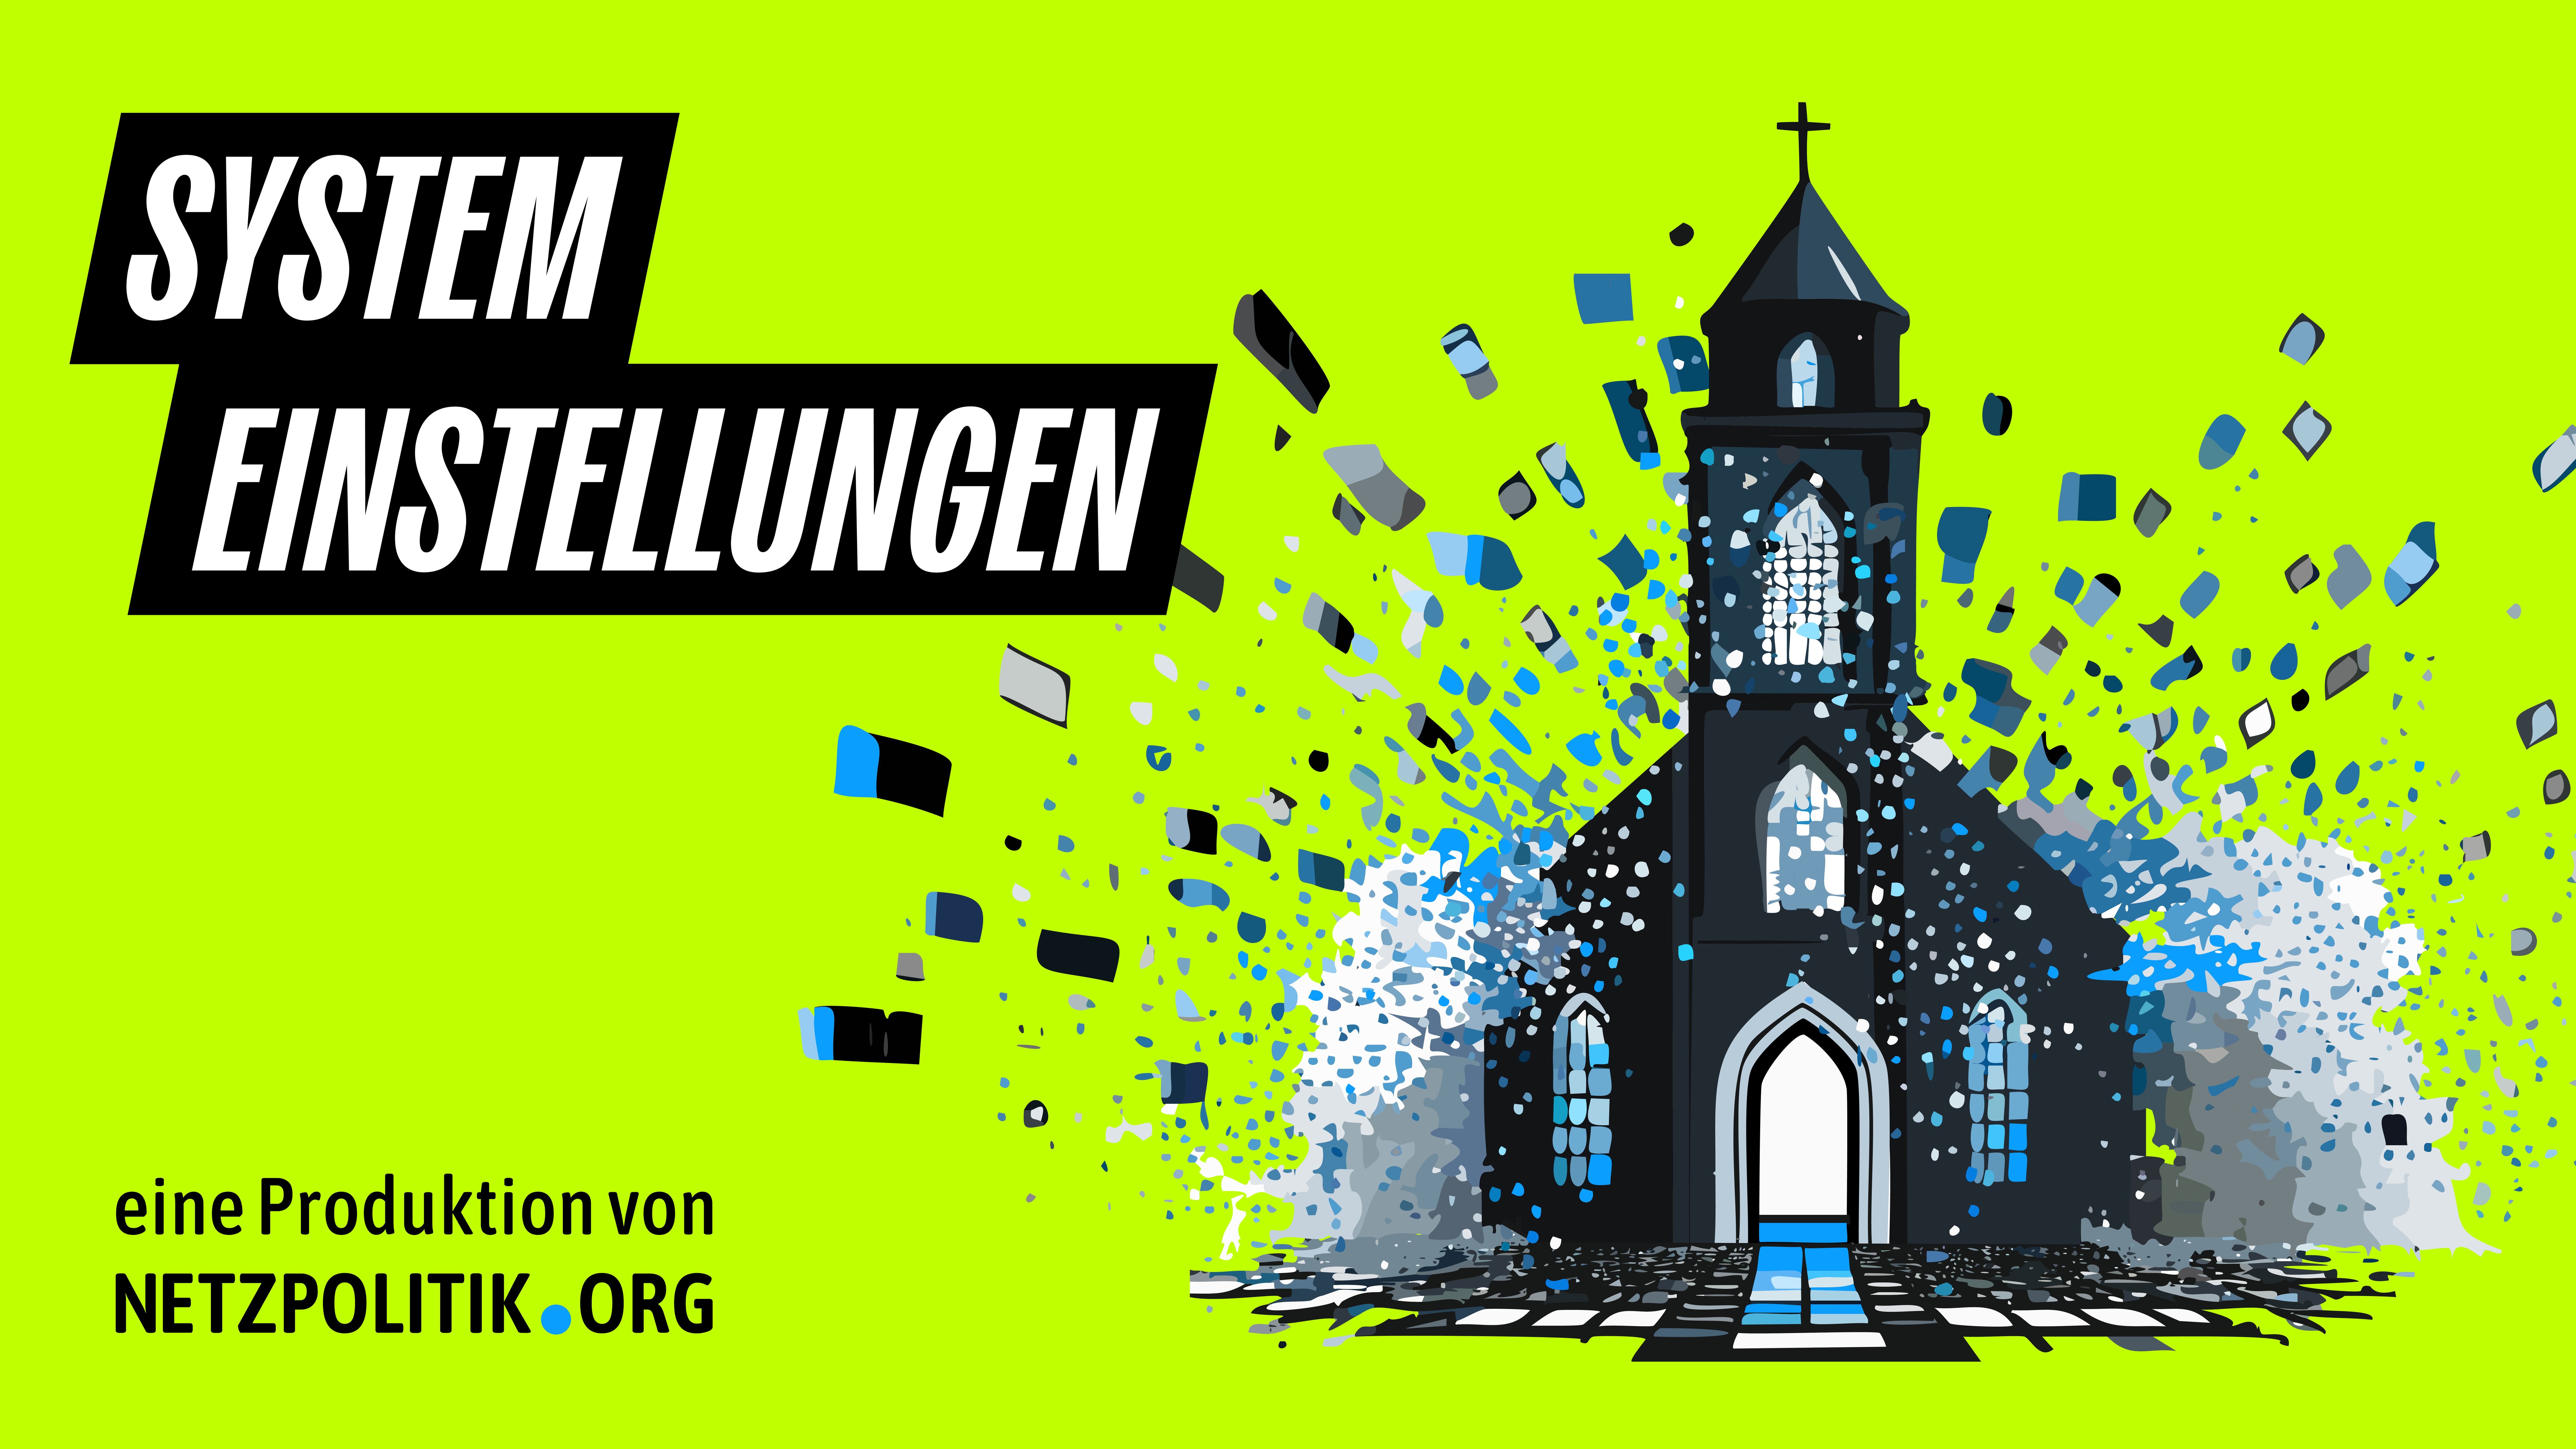 Das Cover der zweiten Folge "Systemeinstellungen". Eine Kirche auf einem grüngelben Hintergrund, die sich langsam aufzulösen scheint. Im linken unteren Eck steht "Eine Produktion von netzpolitik.org"